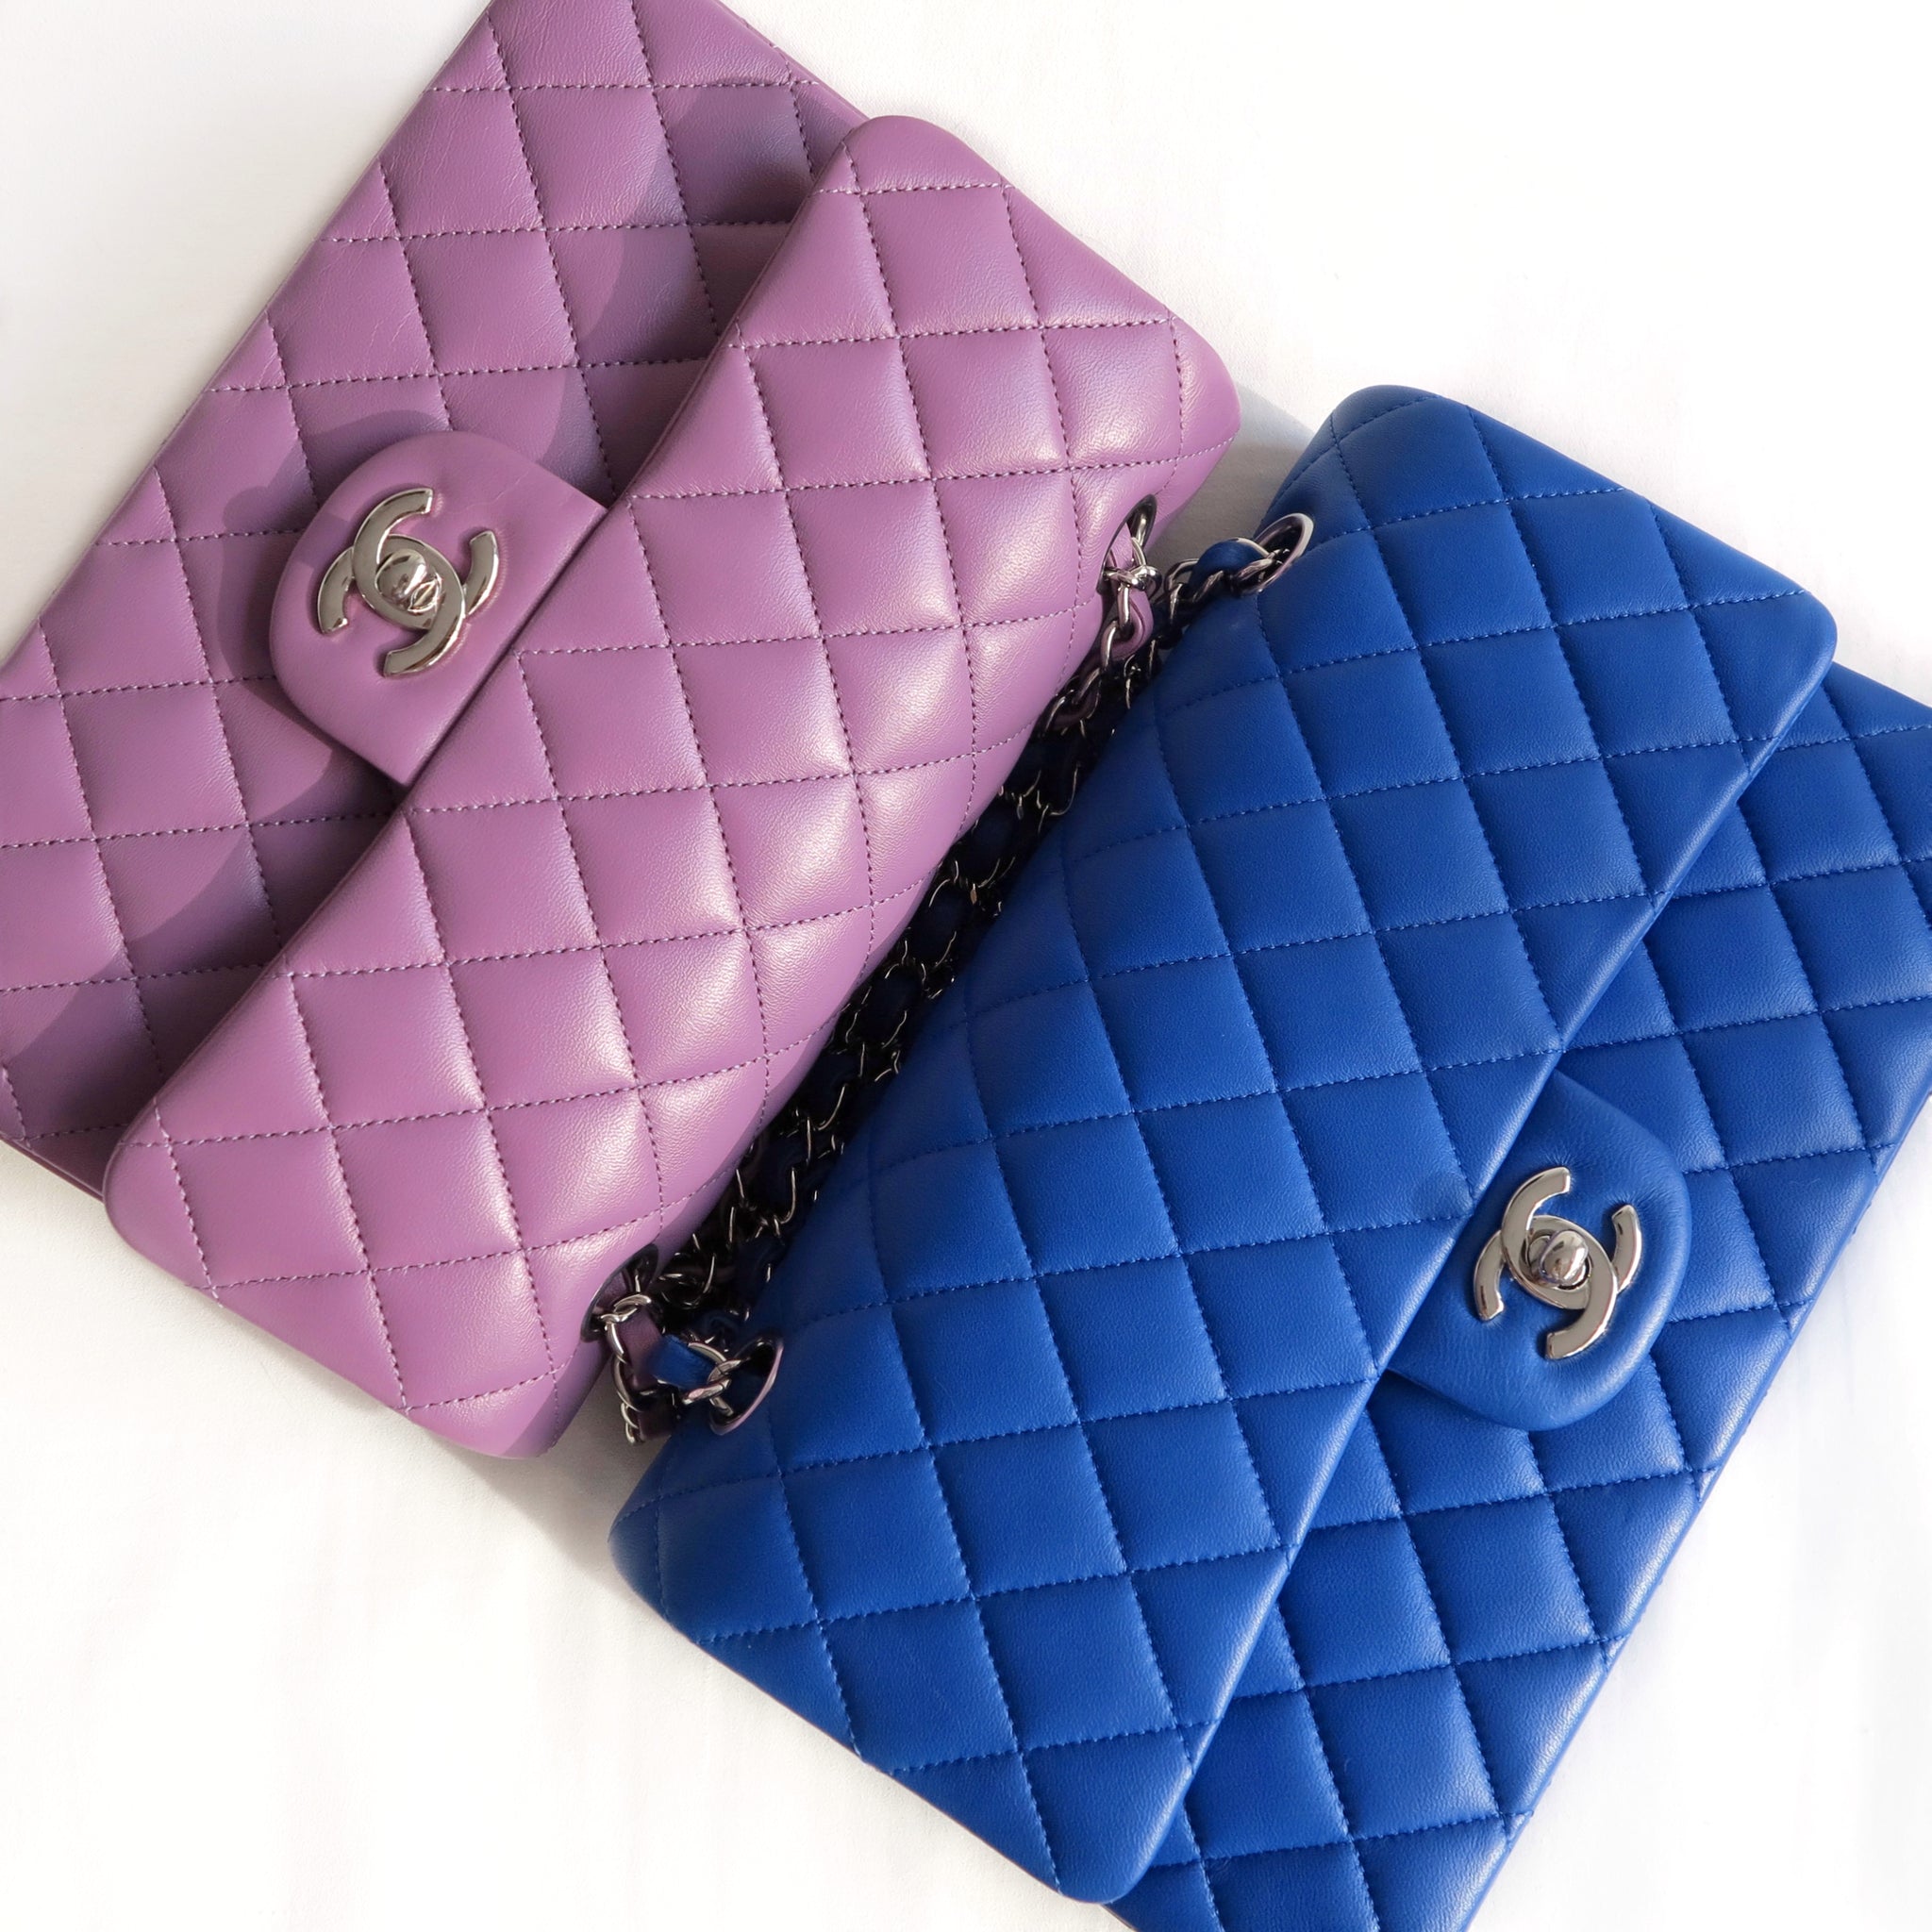 CHANEL Medium Classic Double Flap Bag in Cobalt Blue Lambskin SHW | Dearluxe